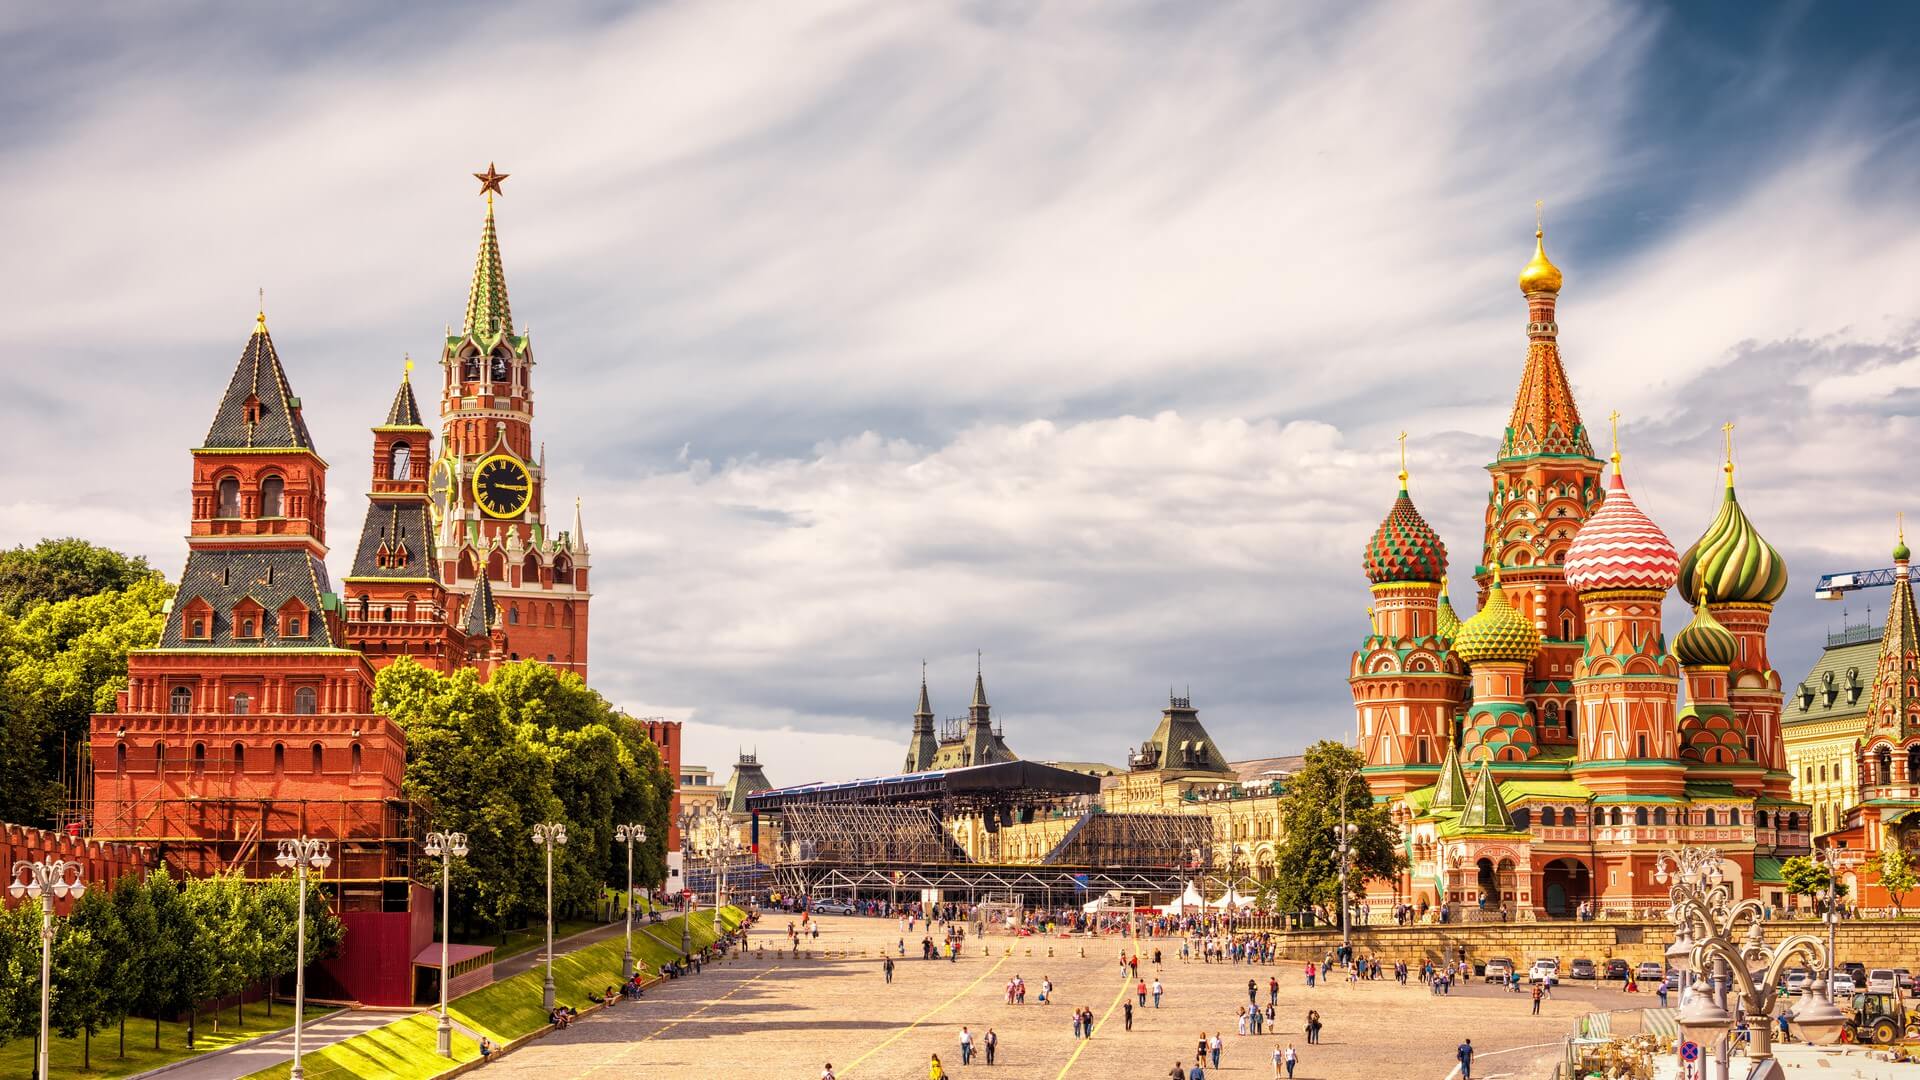 Cremlino di Mosca e Cattedrale di San Basilio sulla Piazza Rossa, Mosca, Russia. L'antico Cremlino di Mosca è la principale attrazione turistica della città. Bella vista panoramica del cuore di Mosca in una giornata di sole.